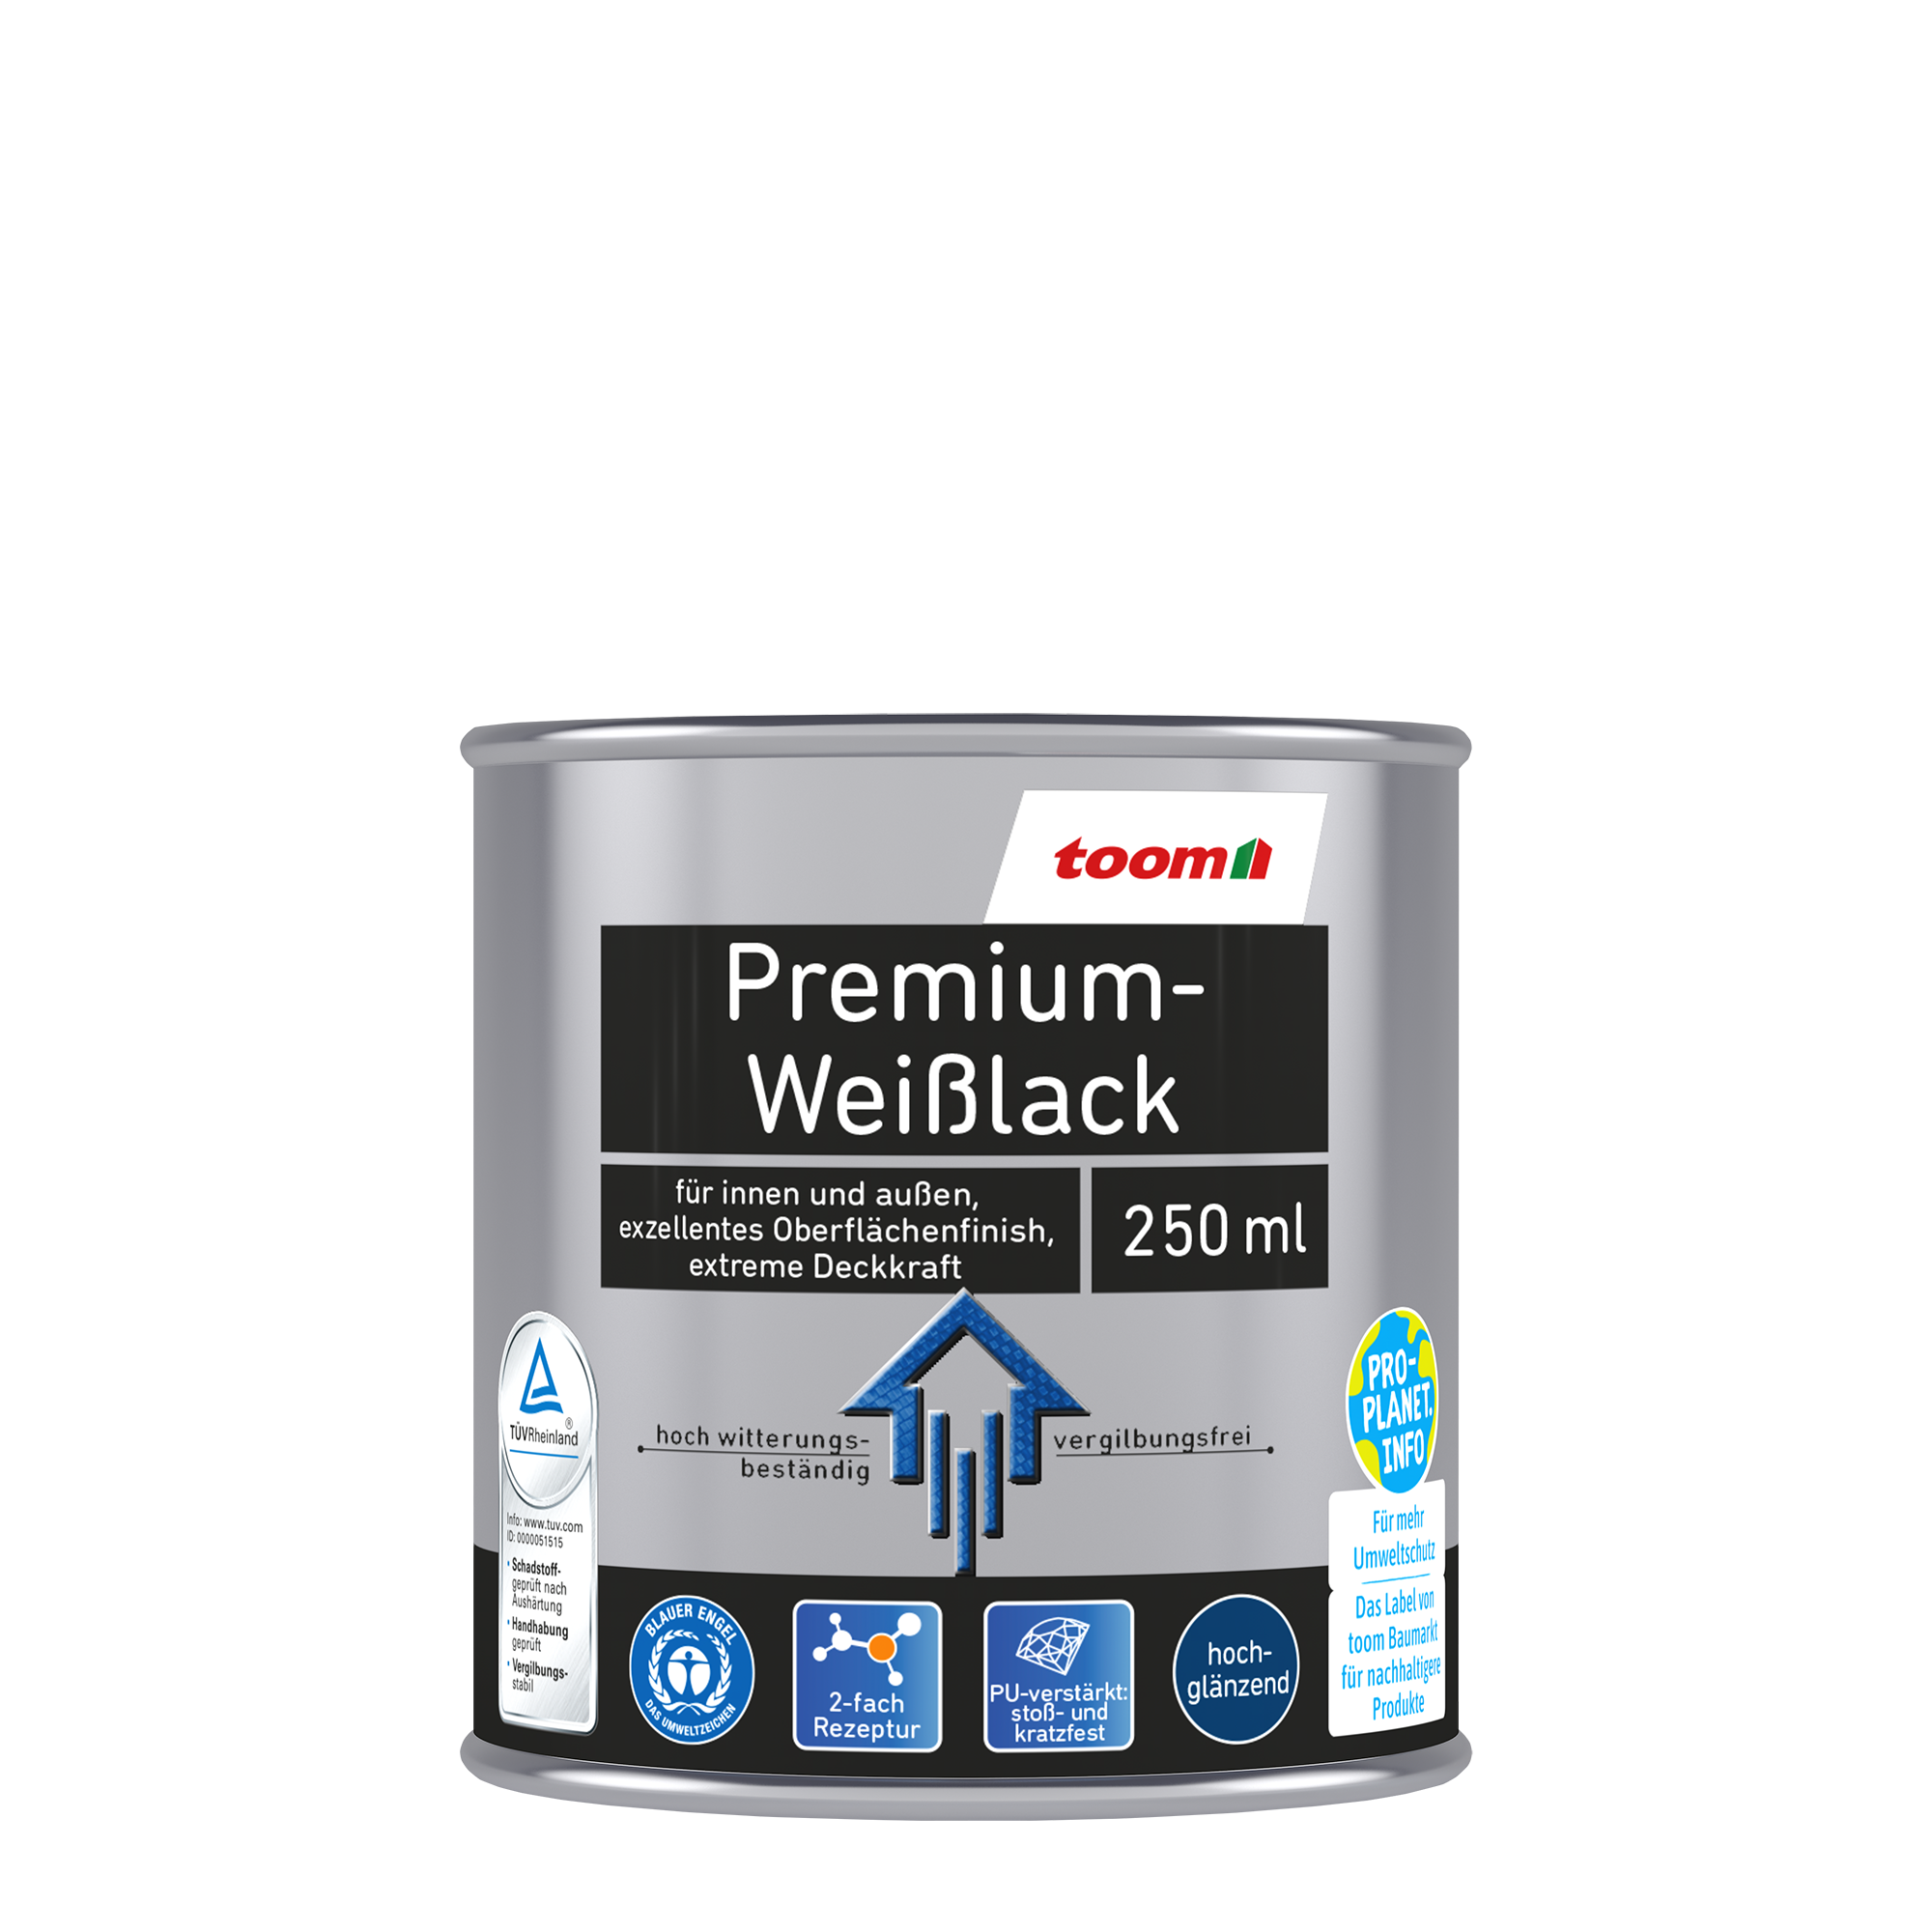 Premium-Weißlack glänzend 250 ml + product picture